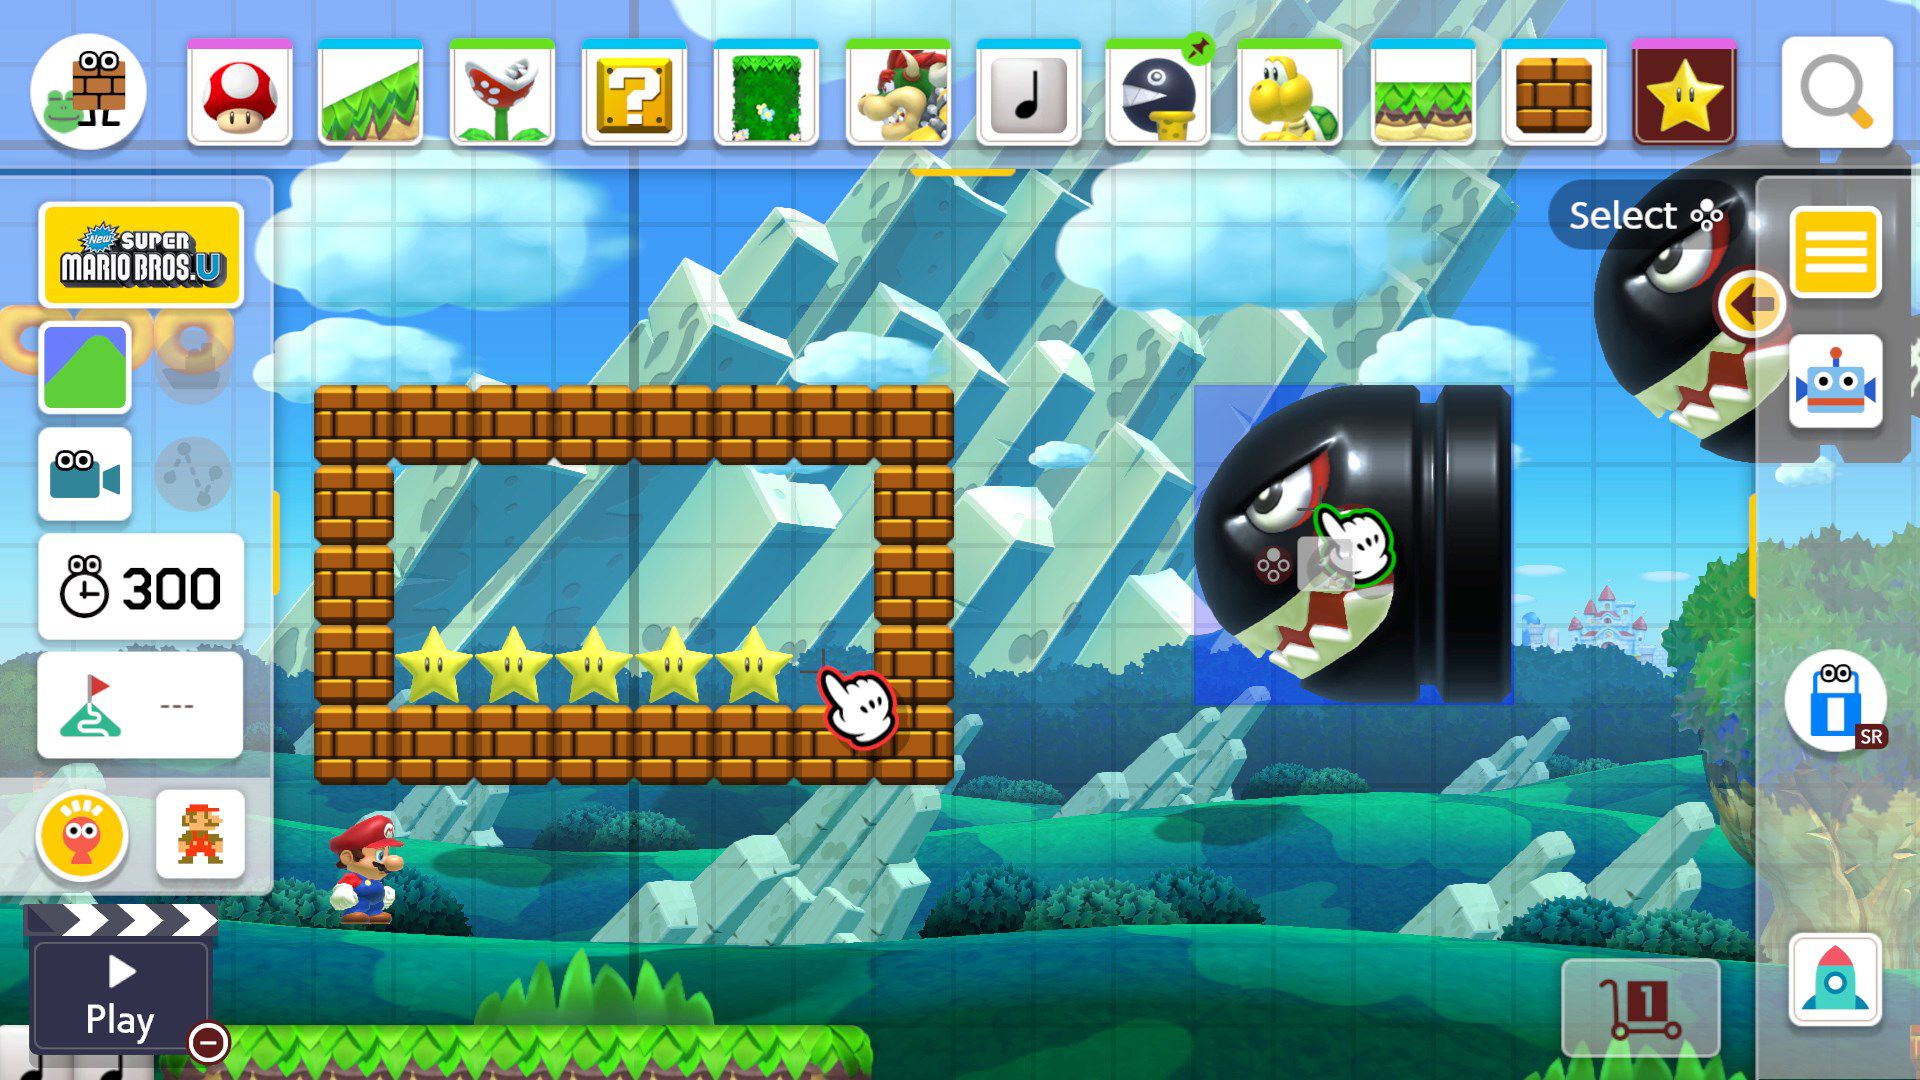 creare un livello in Super Mario Maker 2 con un Banzai Bill indirizzato a un rettangolo di mattoni con stelle di invincibilità all'interno